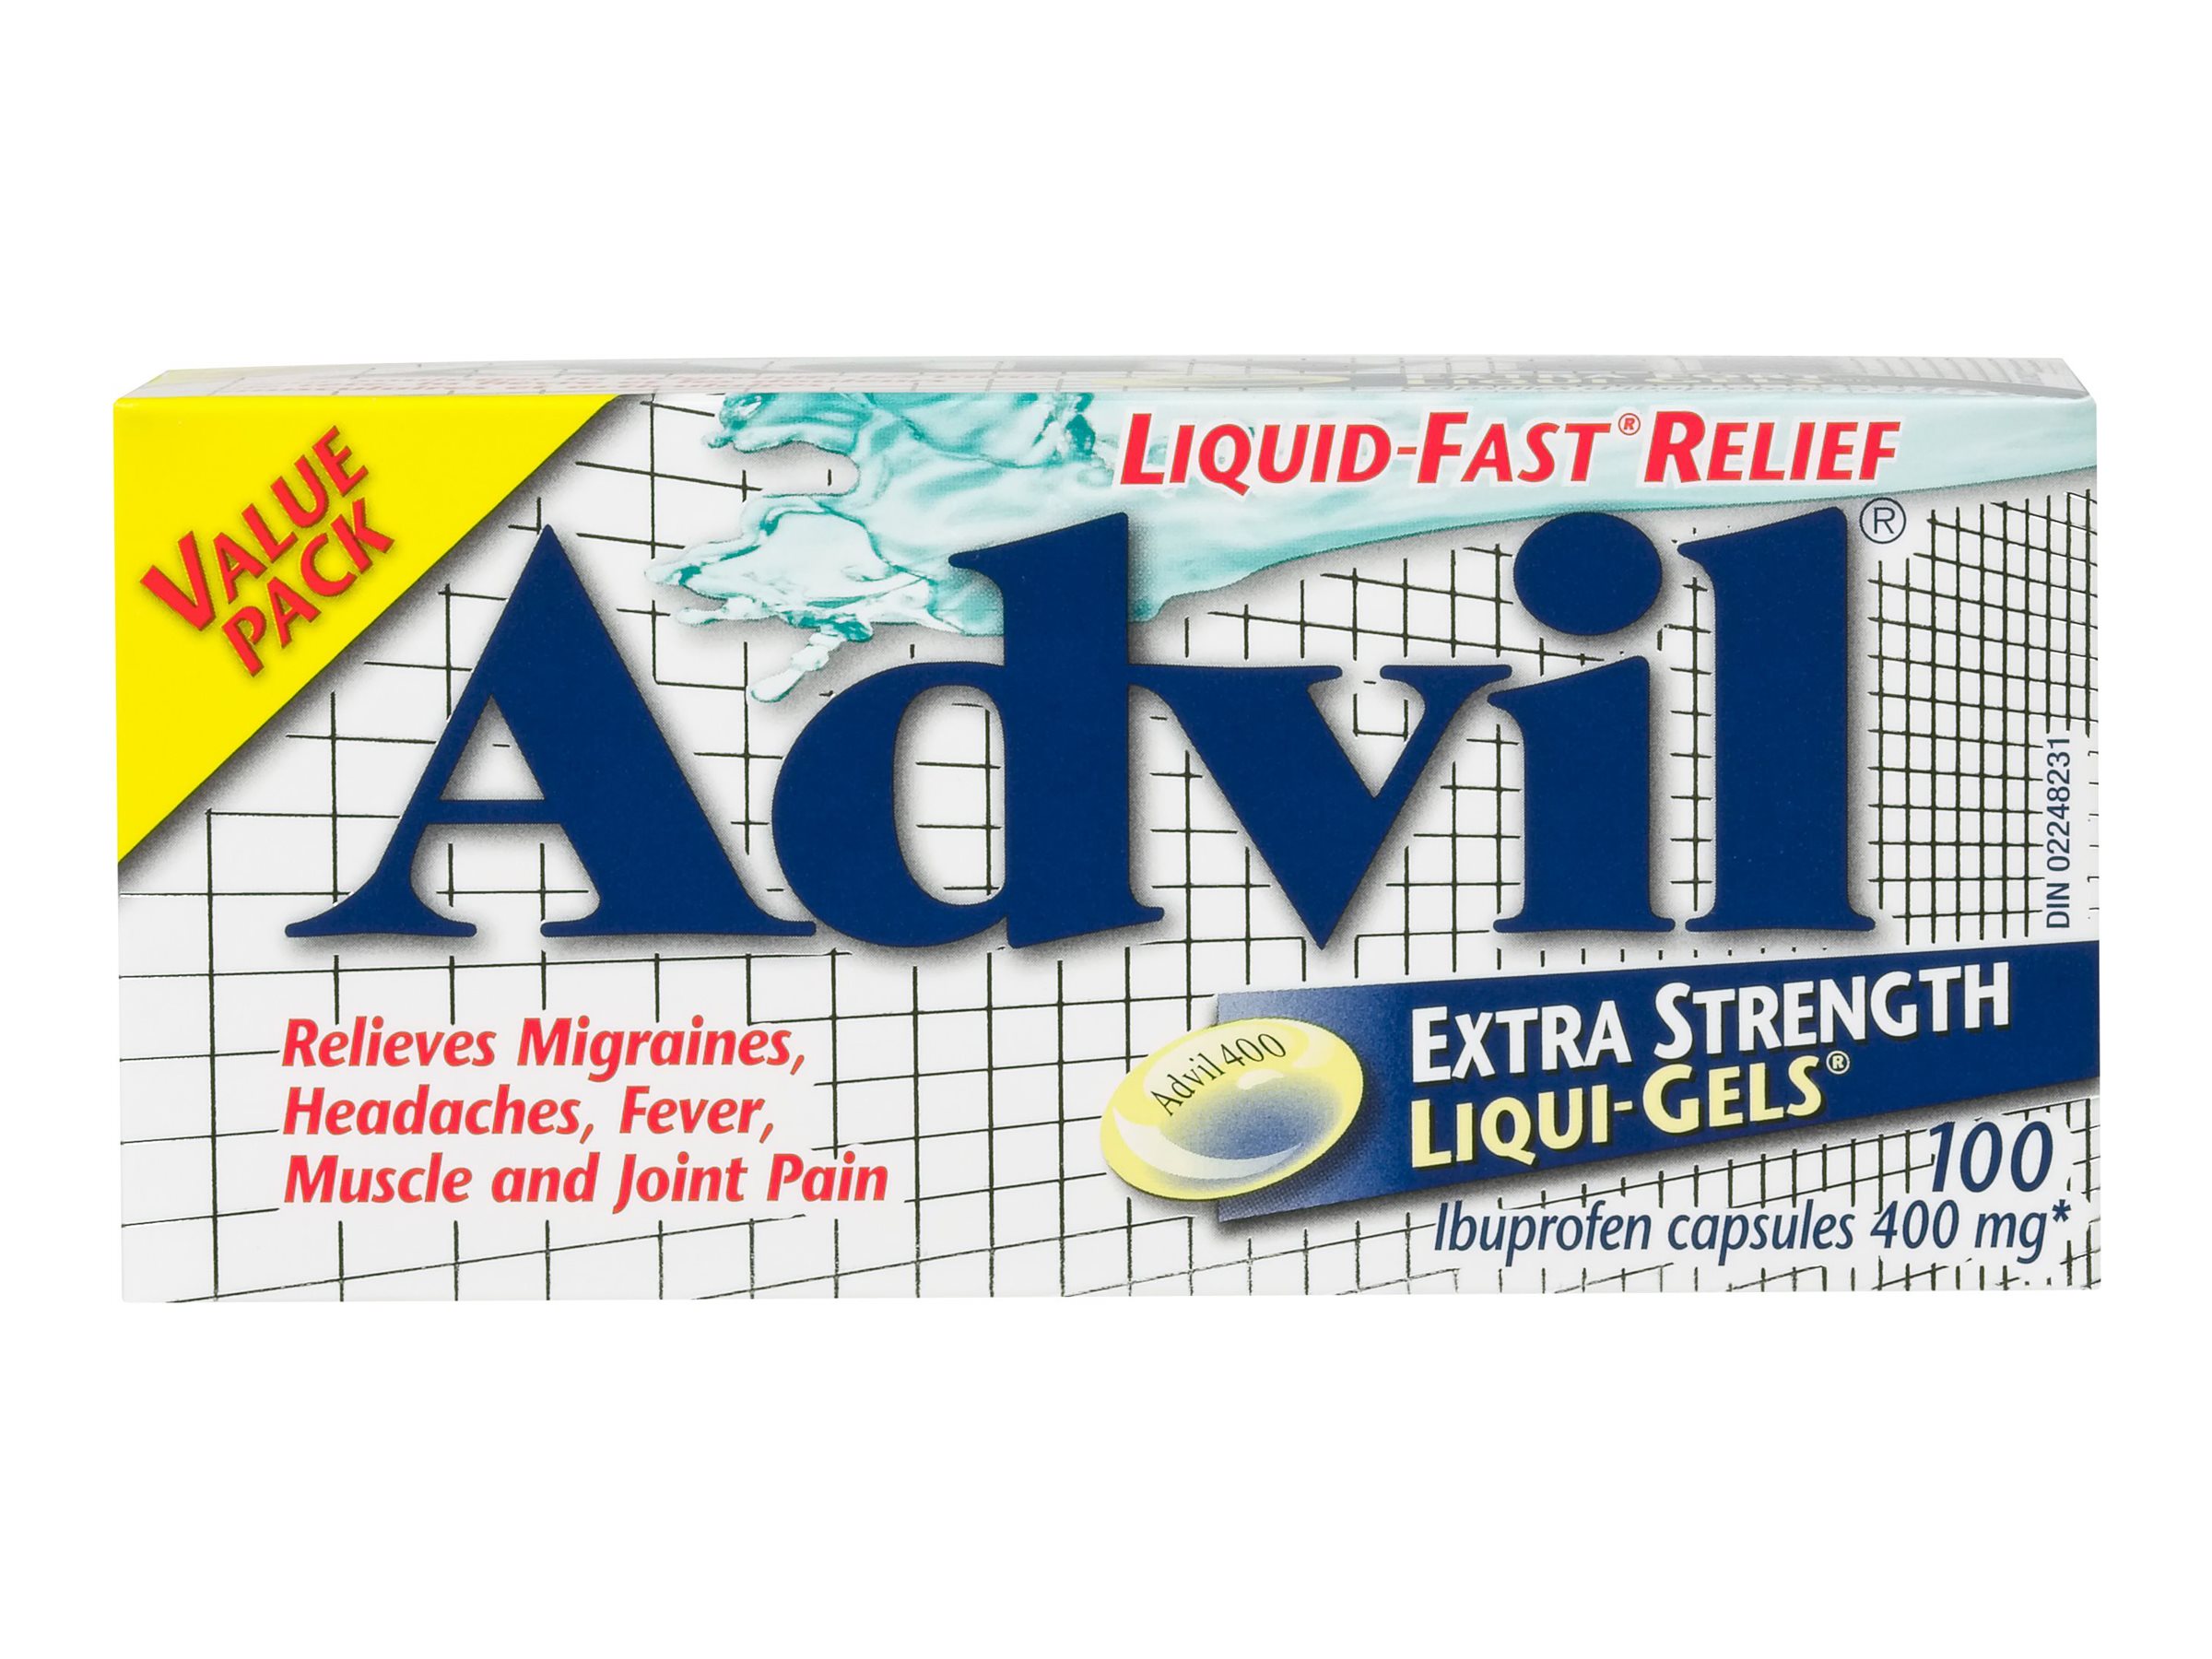 Advil Extra Strength Liqui-Gels Ibuprofen - 400mg - 100s